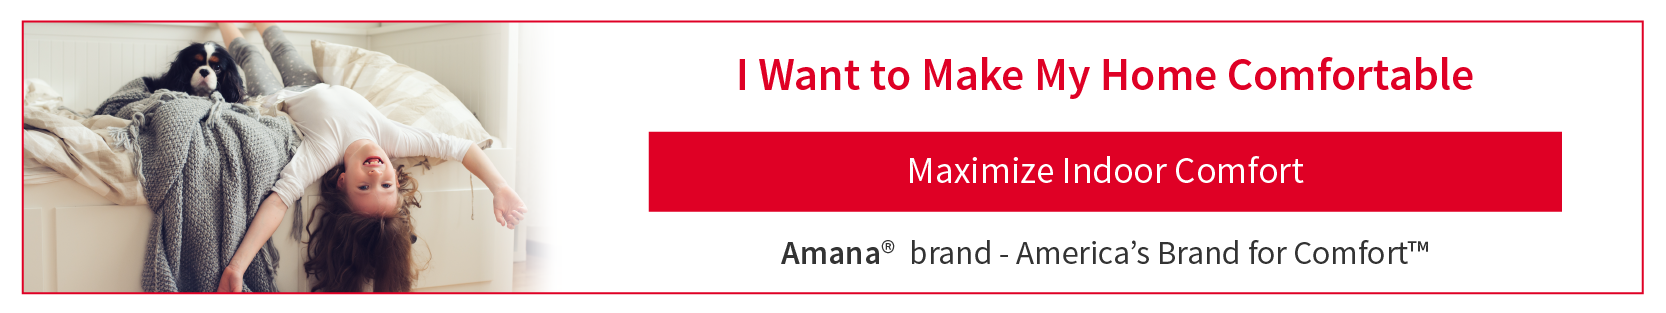 Amana brand Indoor Comfort